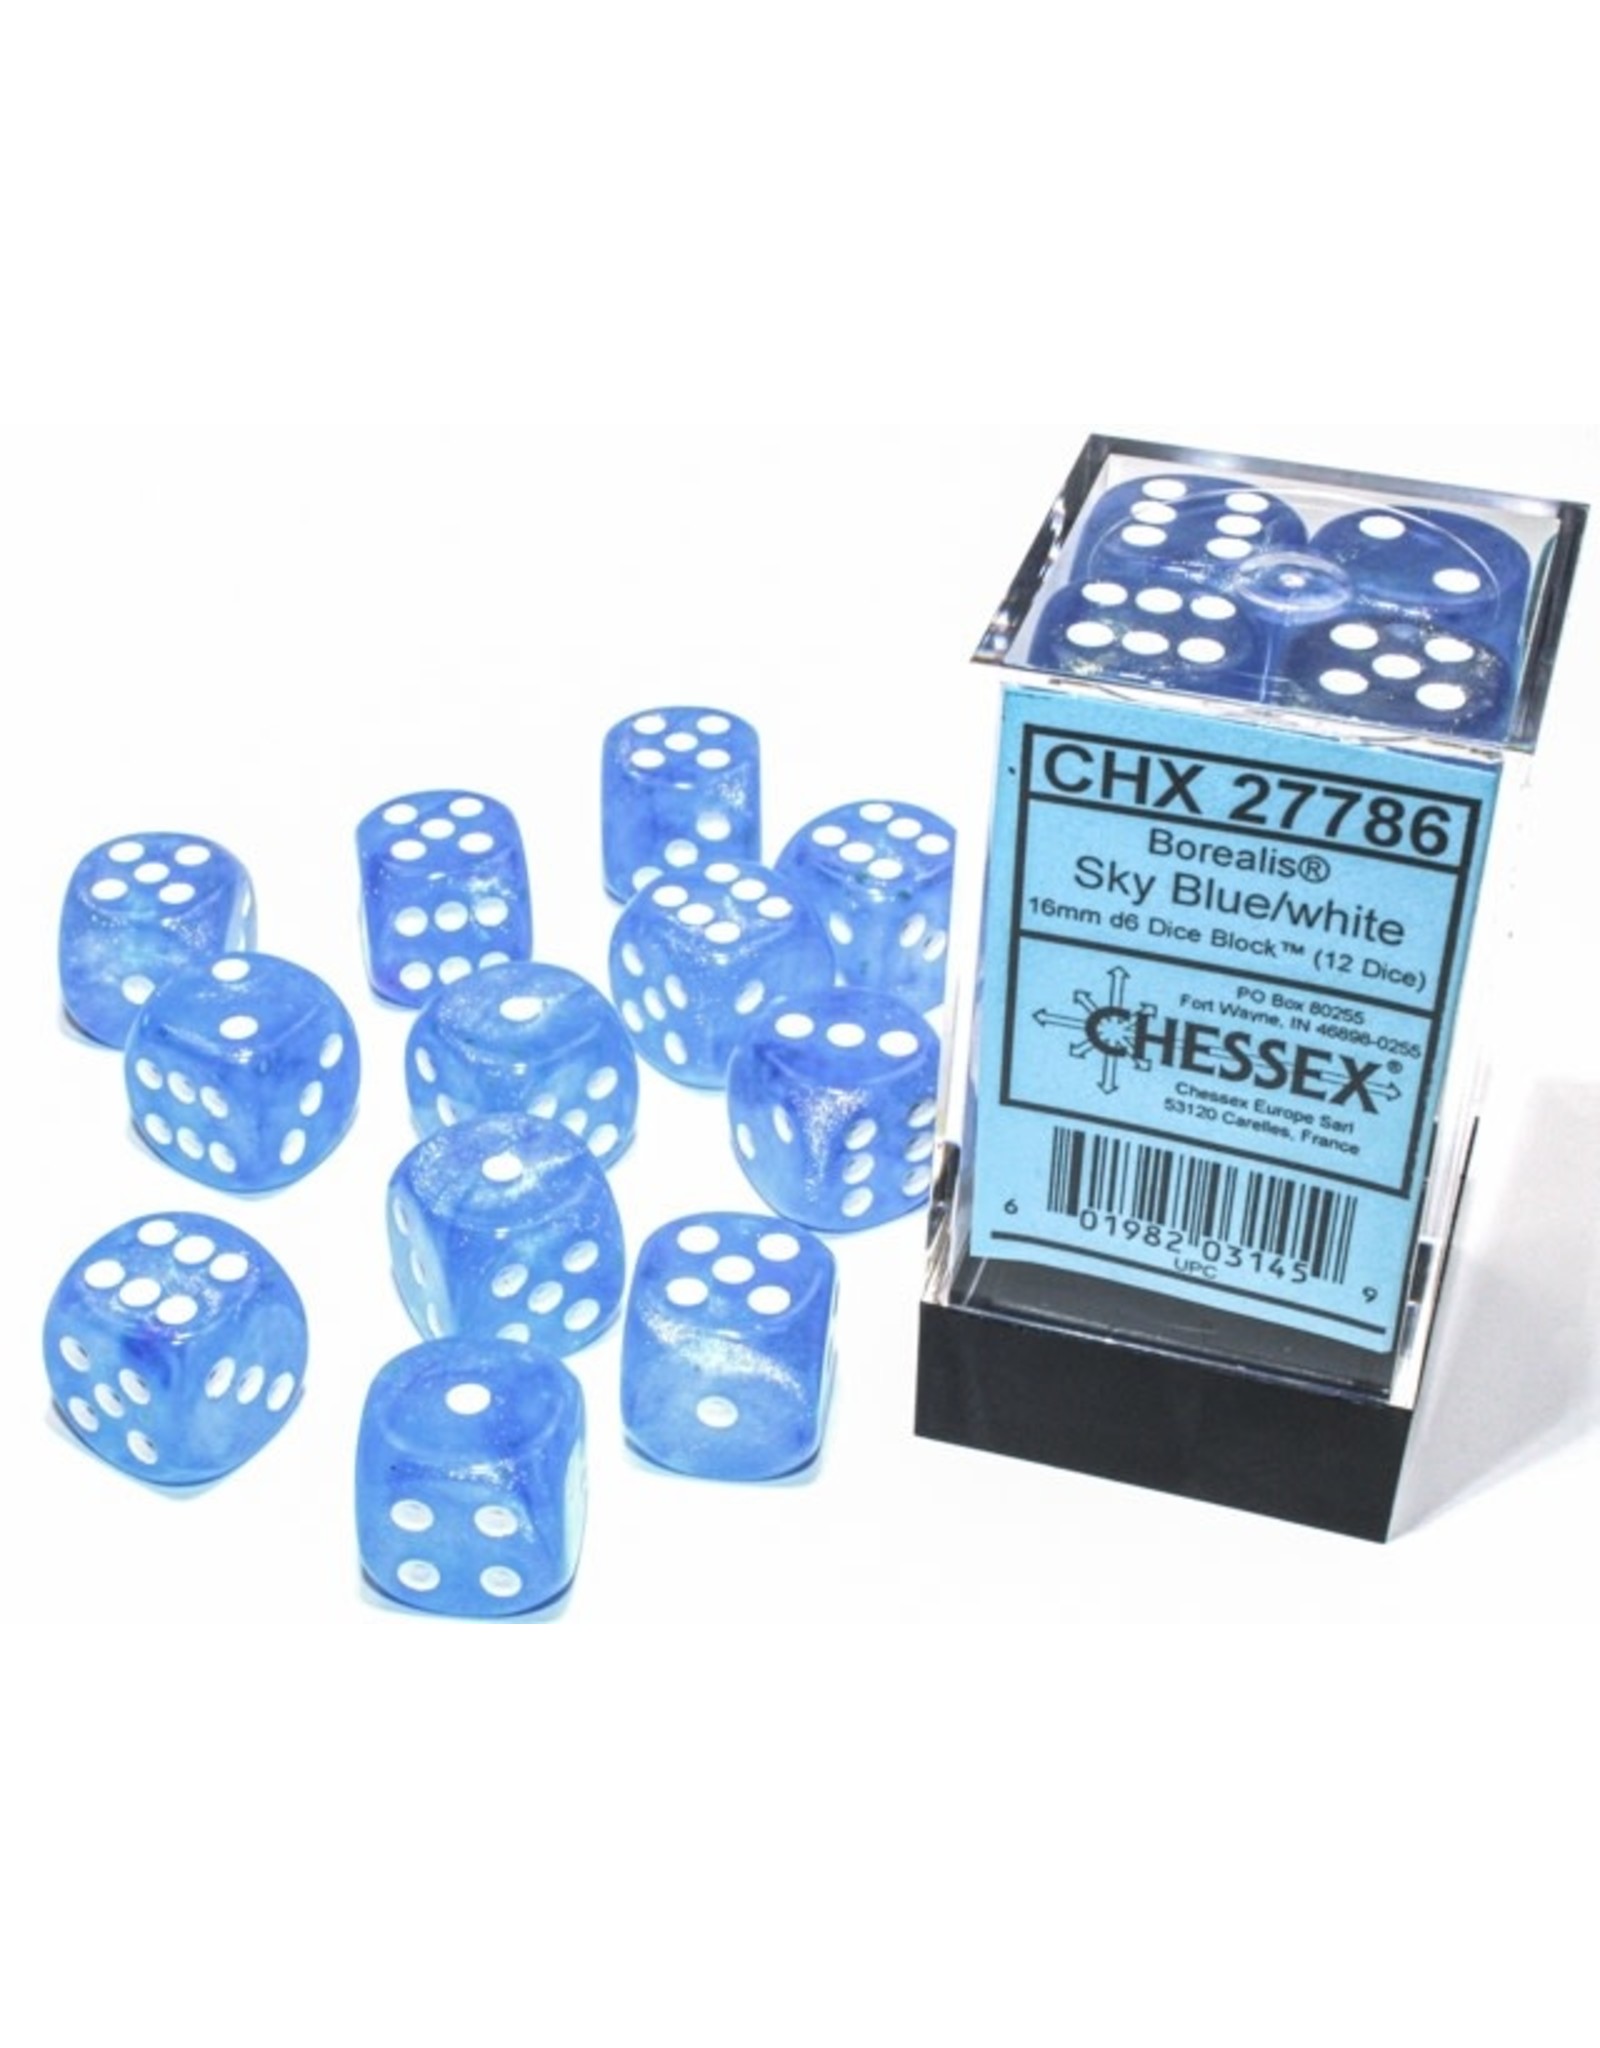 Chessex Chessex Borealis Luminary 16mm (12d6)